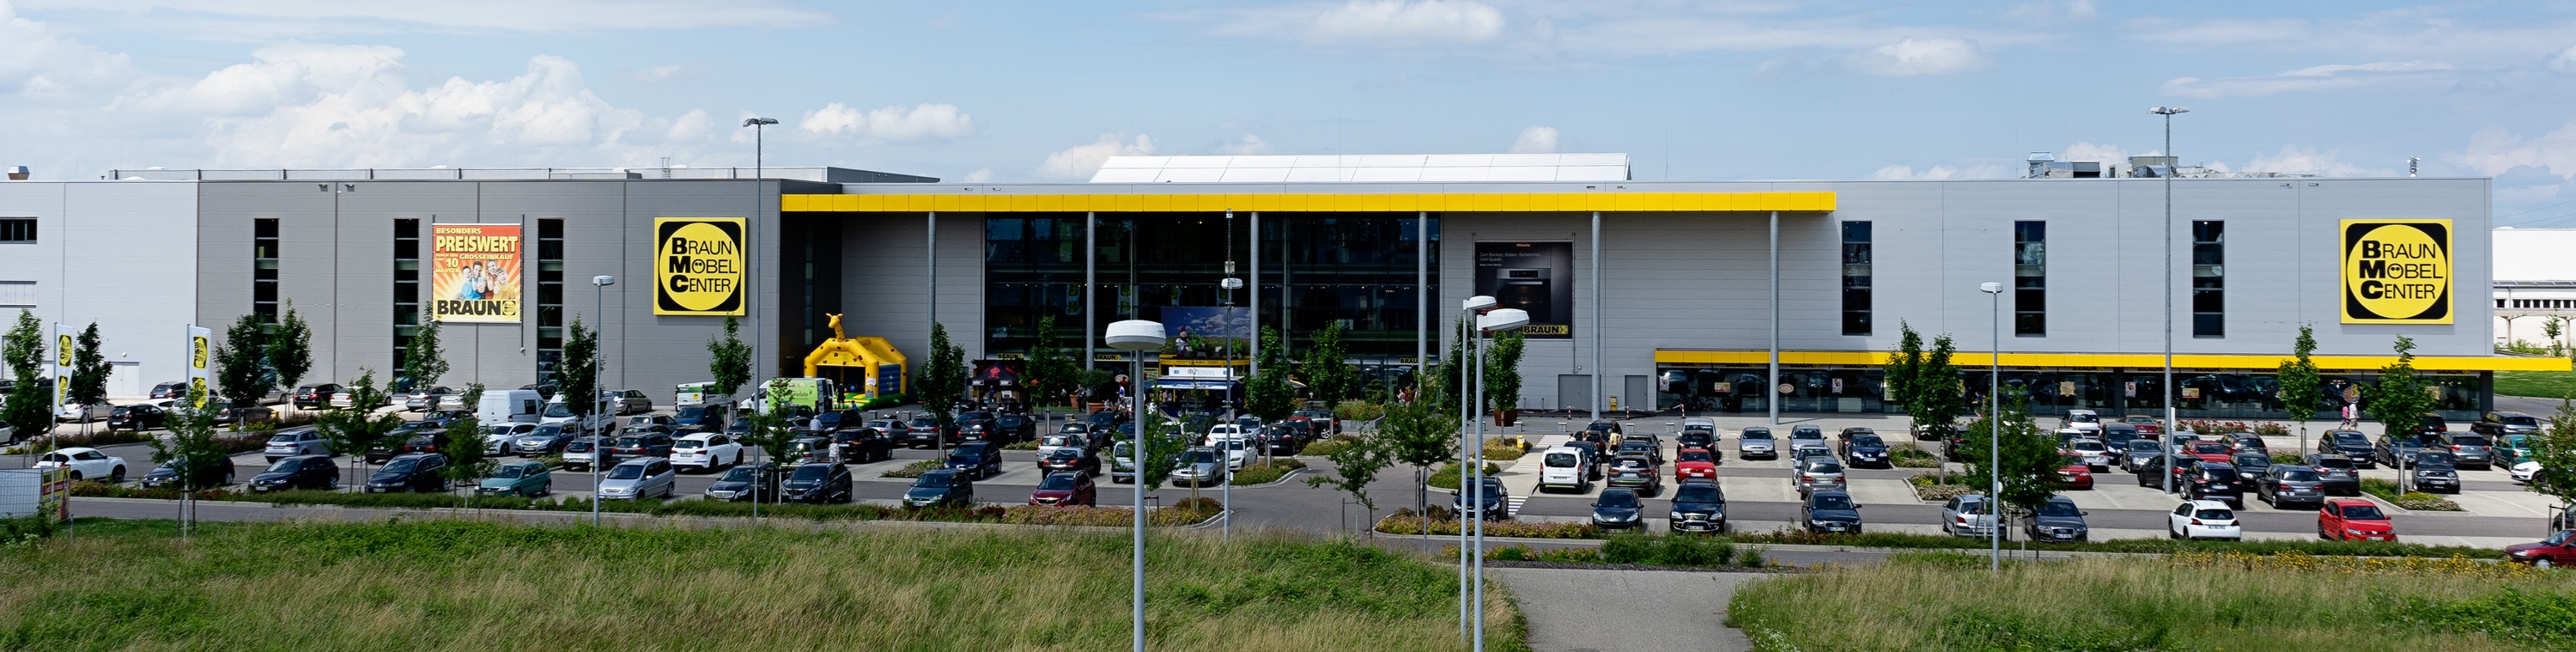 Braun Möbel Center in Offenburg